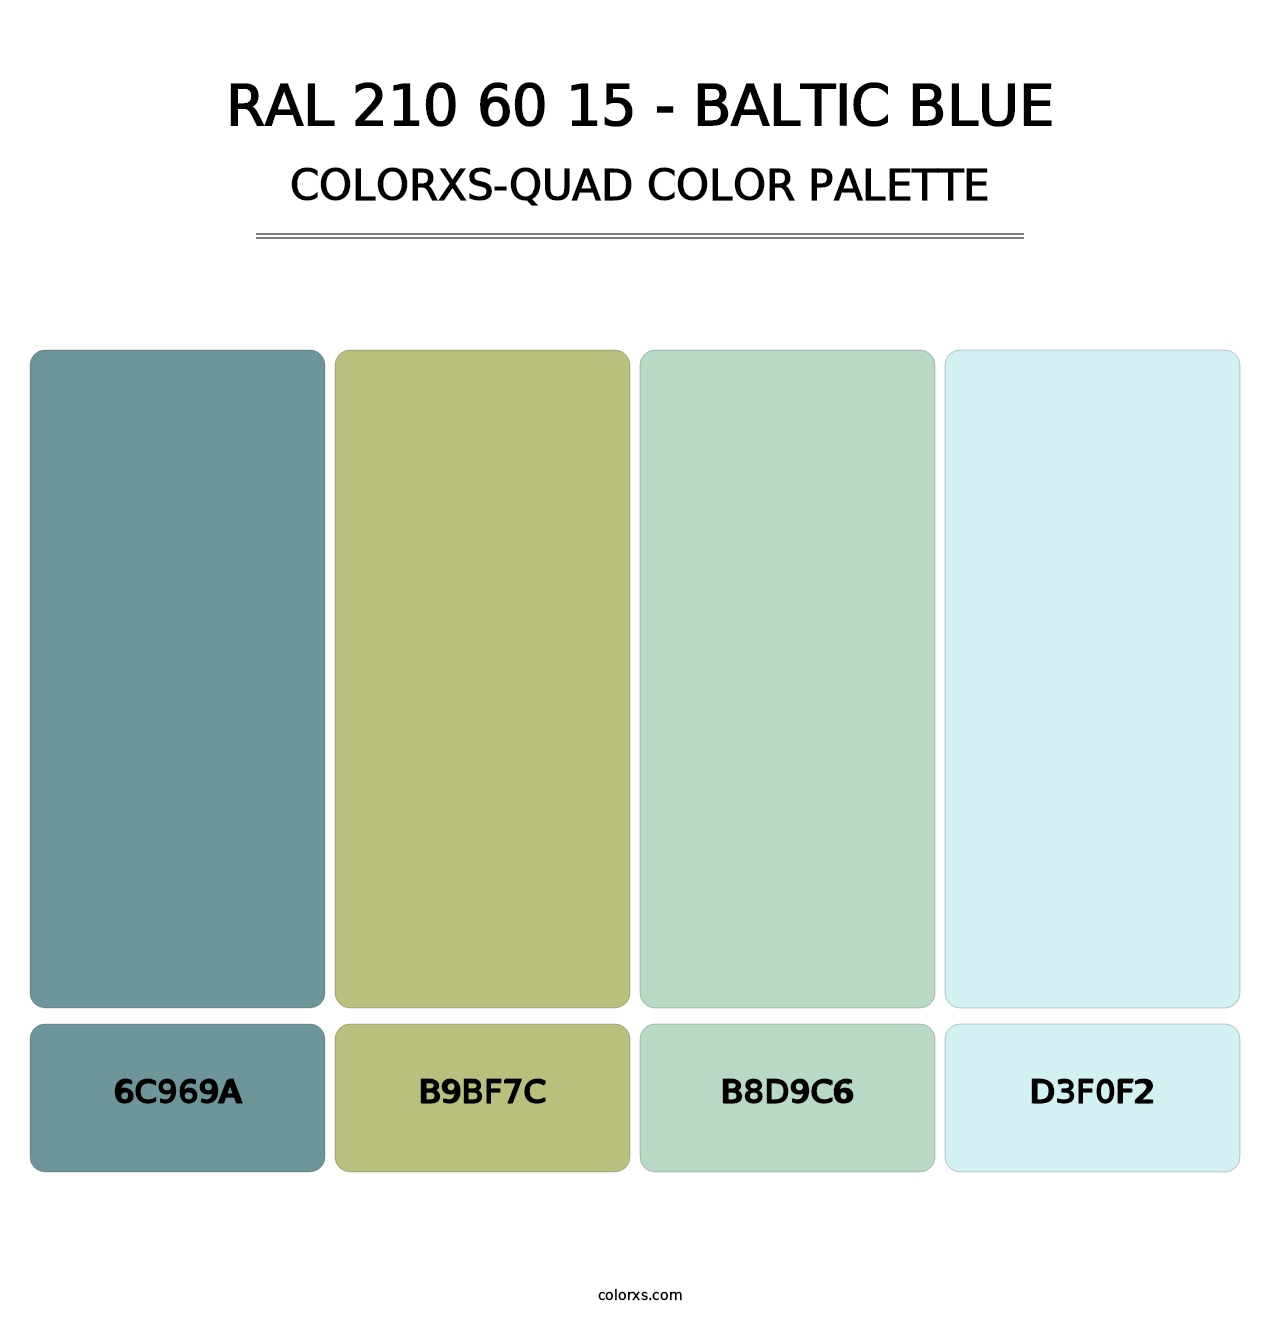 RAL 210 60 15 - Baltic Blue - Colorxs Quad Palette